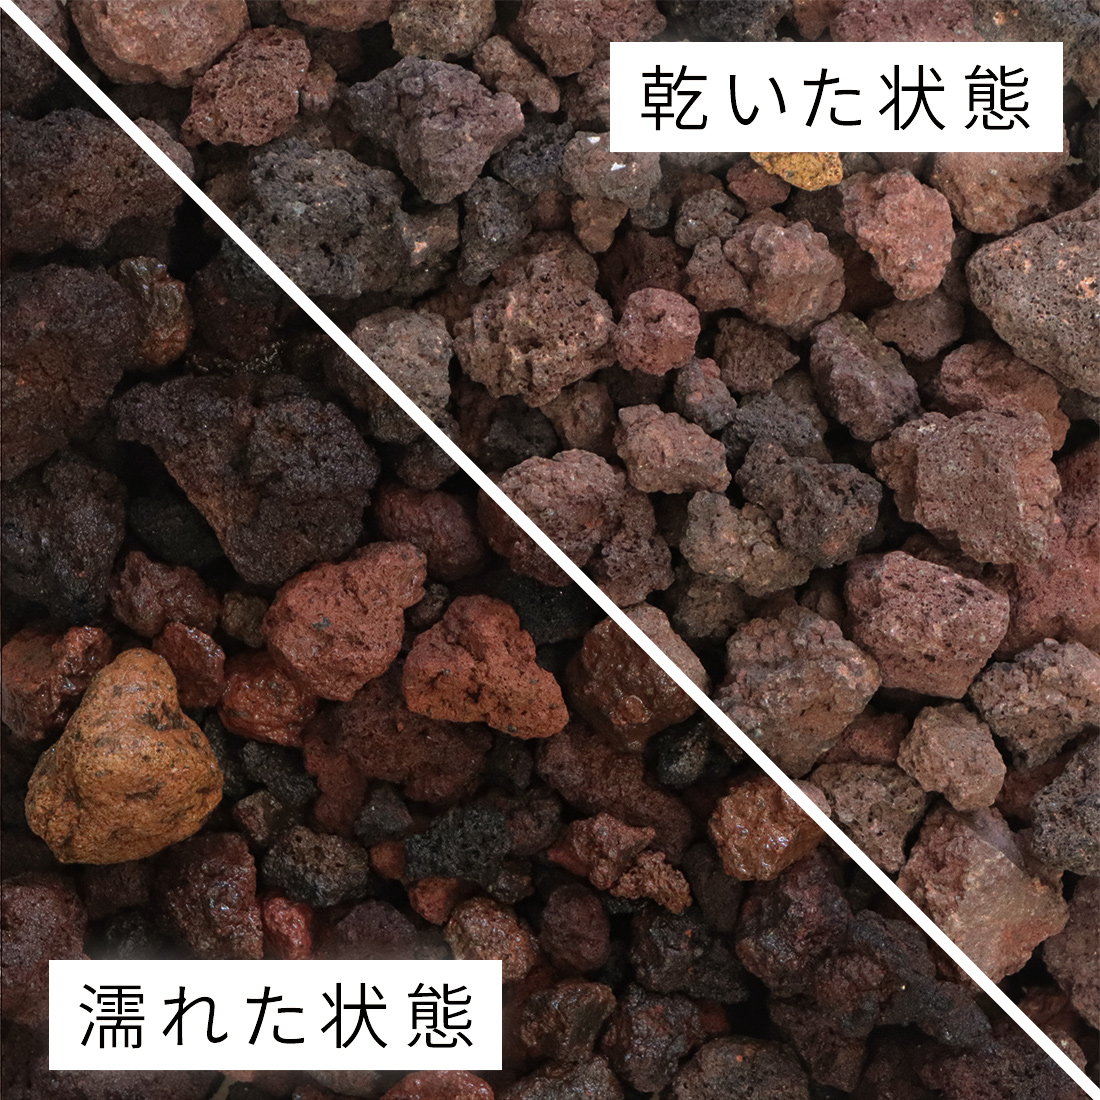 琉球石灰岩 100-200mm 50kg (10kg×5箱) - 2